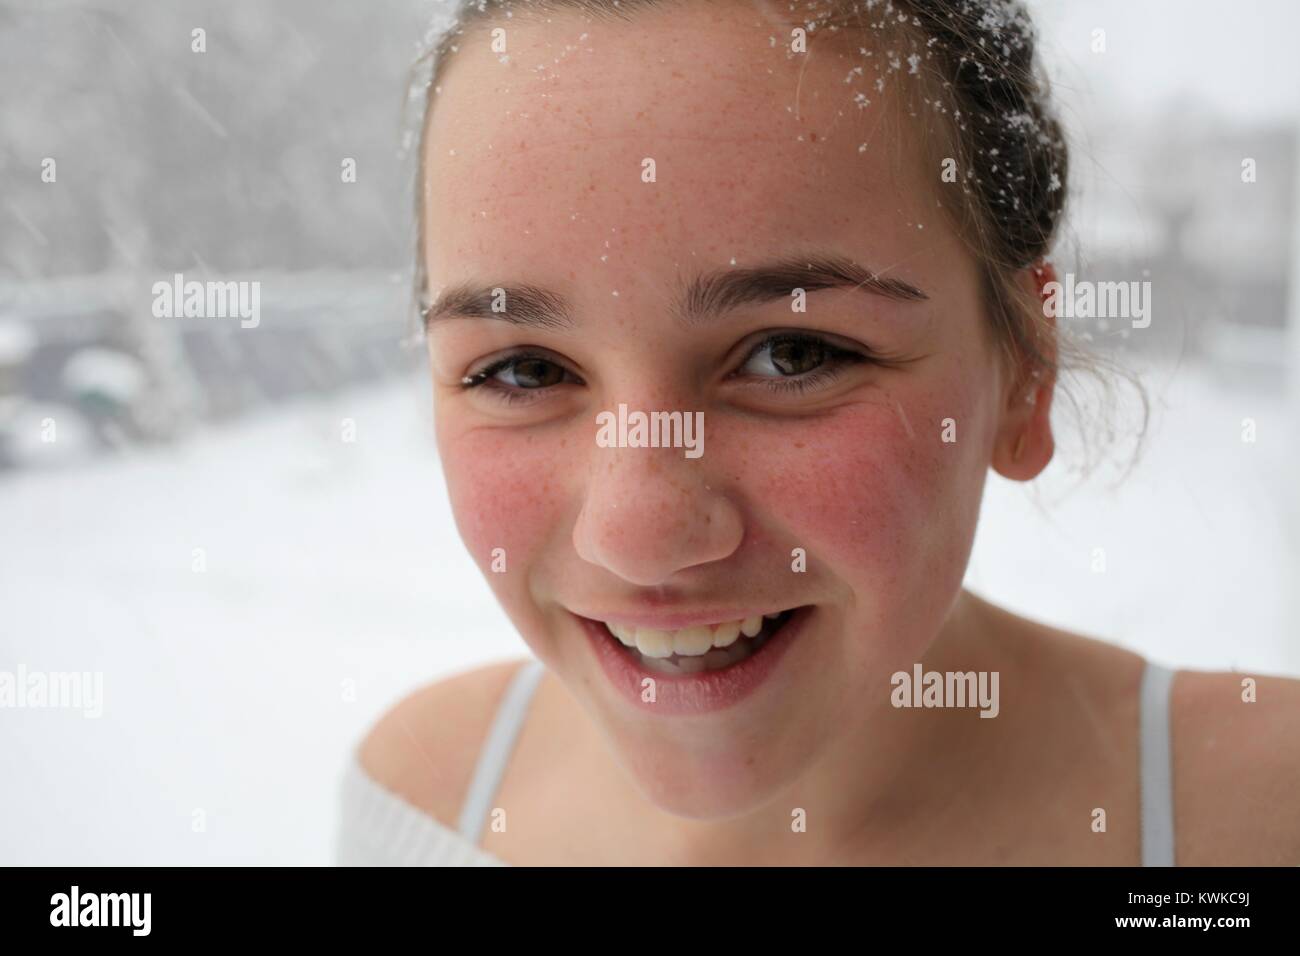 Portrait of a young woman smiling as snow falls dans les cheveux et autour de son visage Banque D'Images